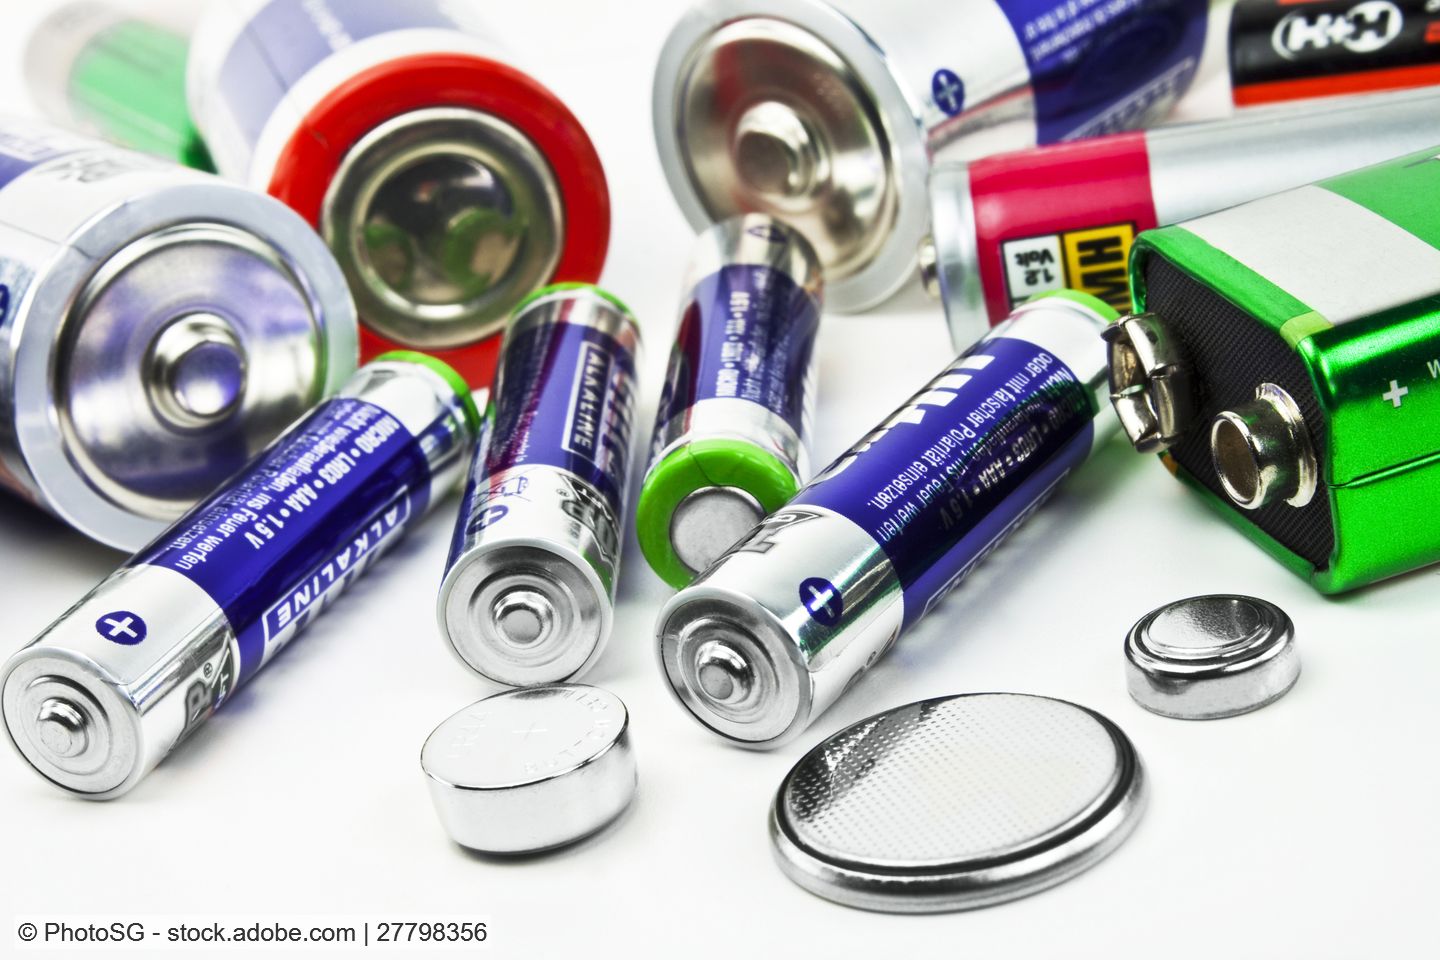 Umweltverbände fordern schnellere Umsetzung der geplanten Batterieverordnung